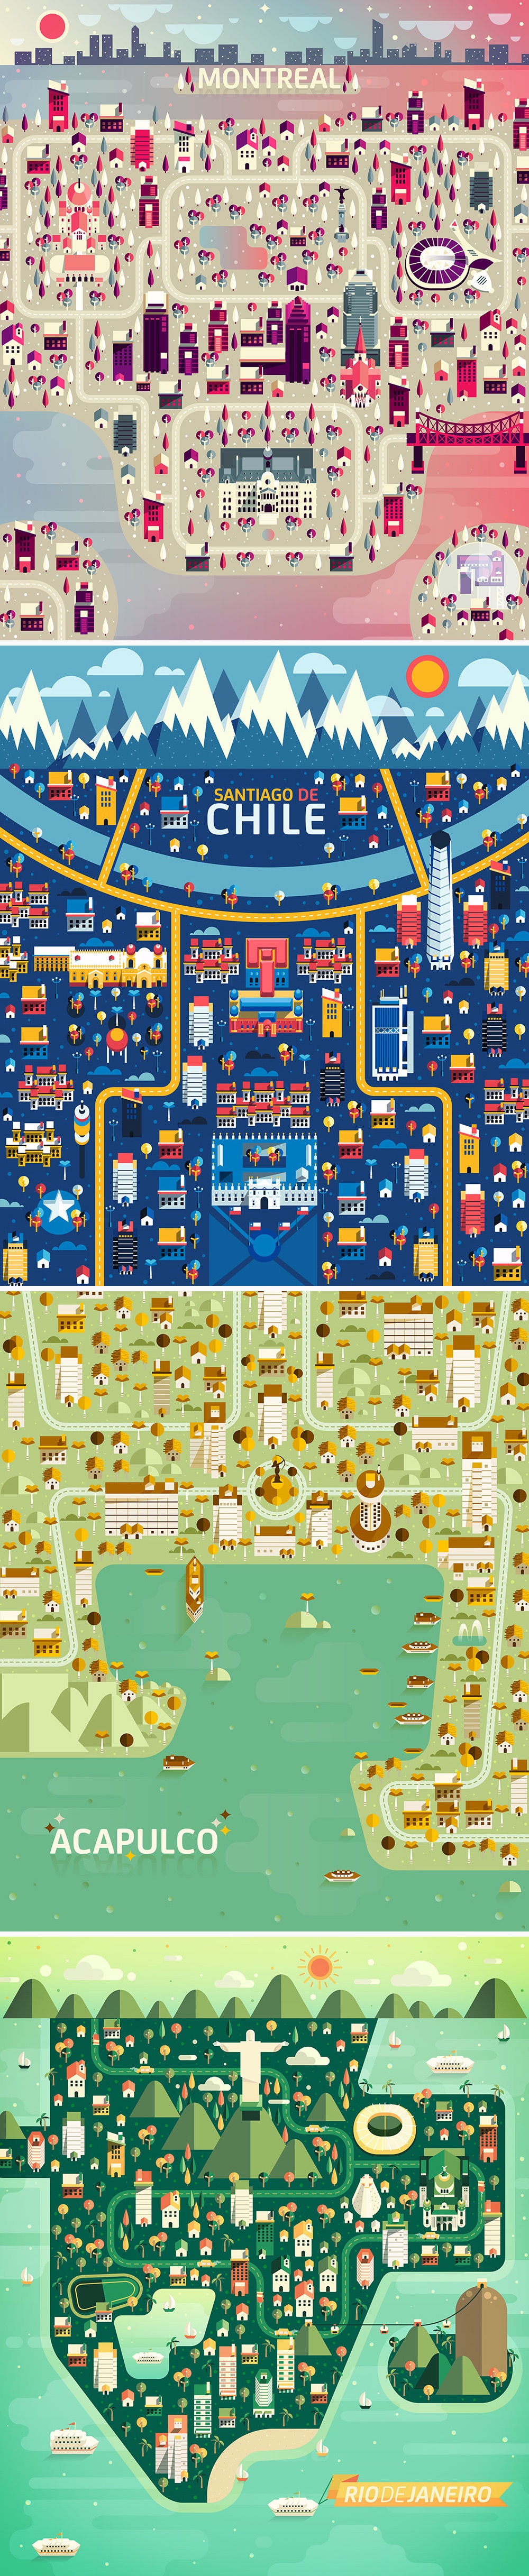 34个世界著名城市的超赞地图画法